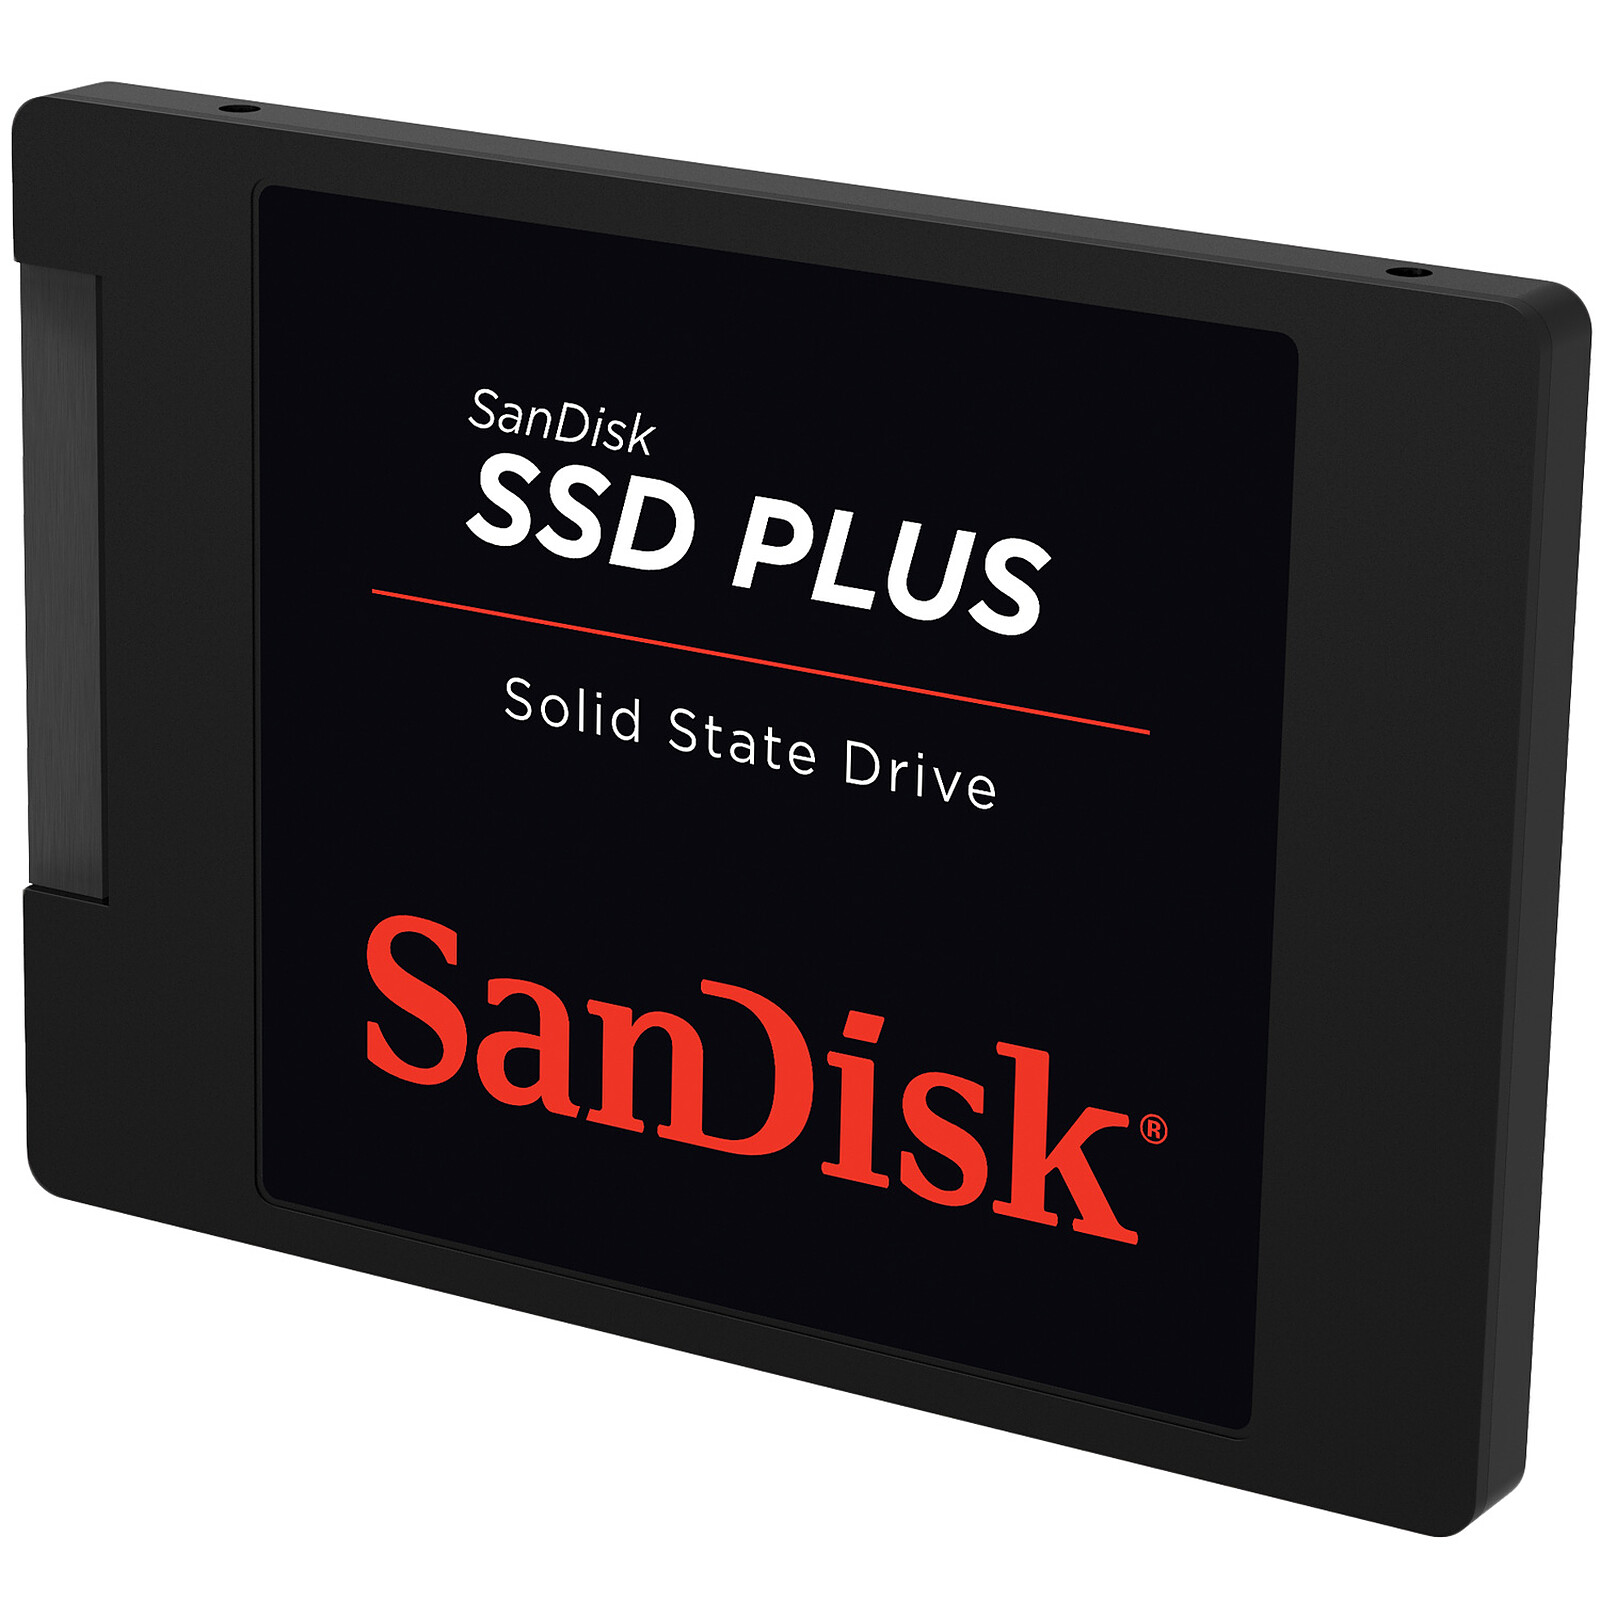 N'achetez plus de SSD SanDisk ou WD, au risque de perdre toutes vos données  !